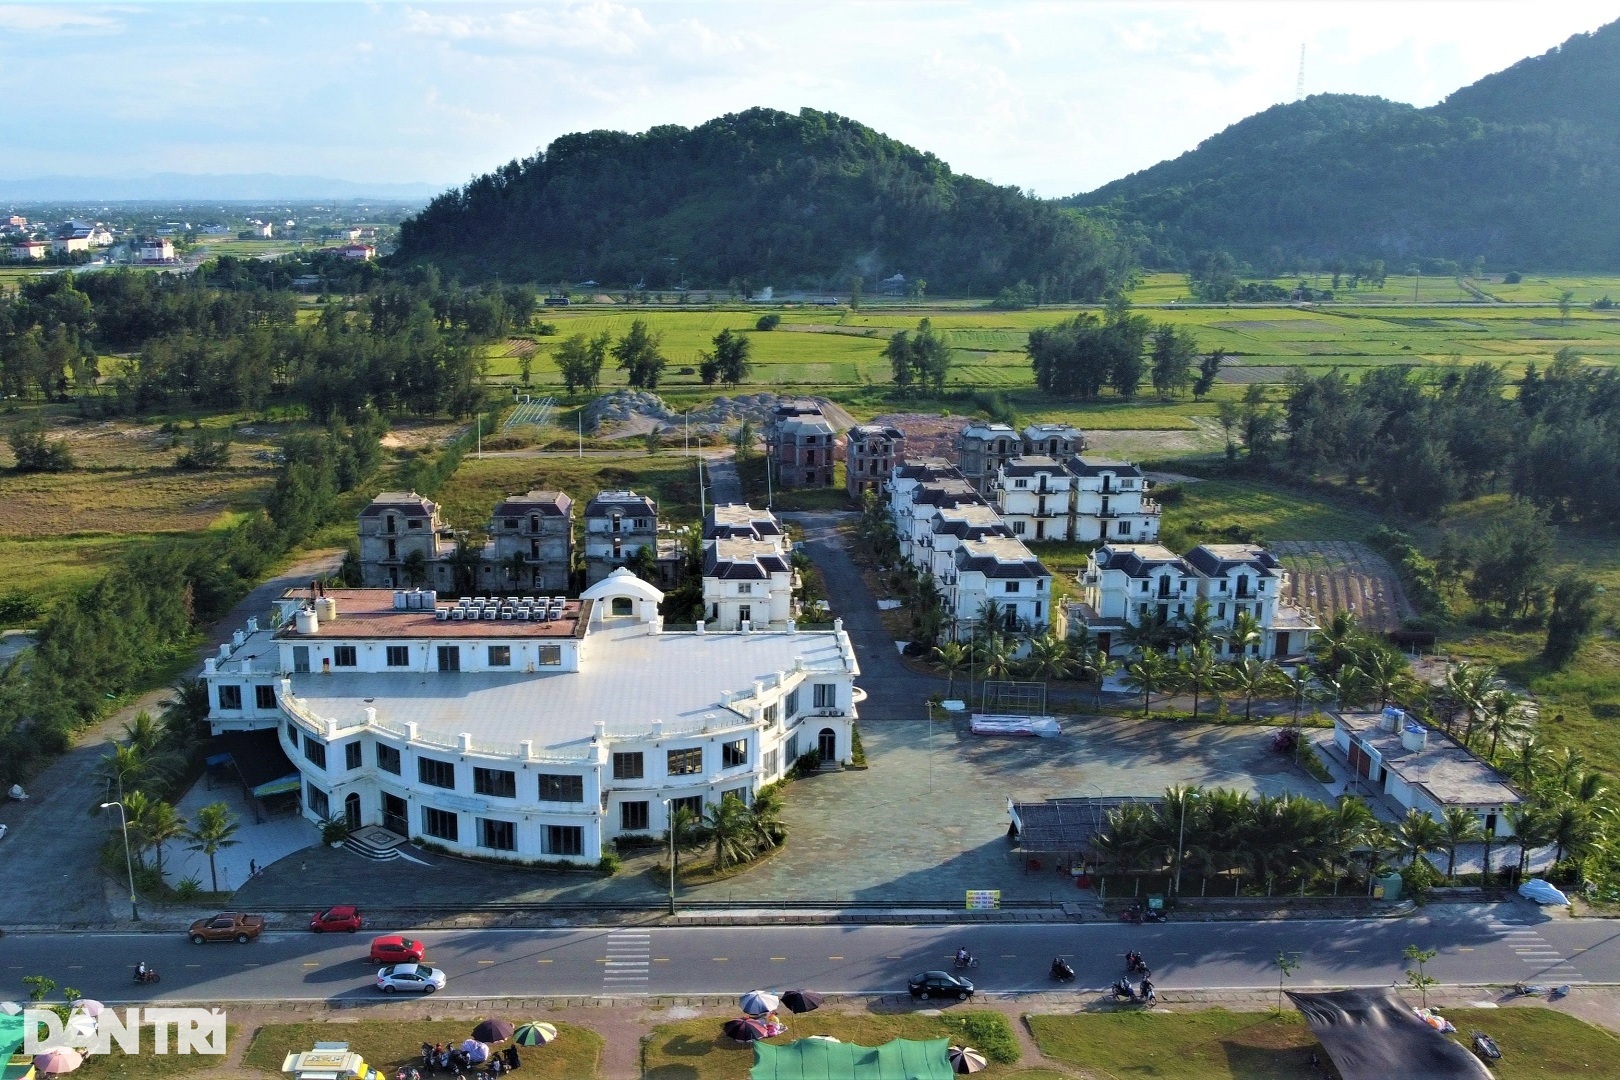 View - Dự án biệt thự, nhà hàng 370 tỷ đồng ngổn ngang ở khu du lịch biển Lộc Hà | Báo Dân trí